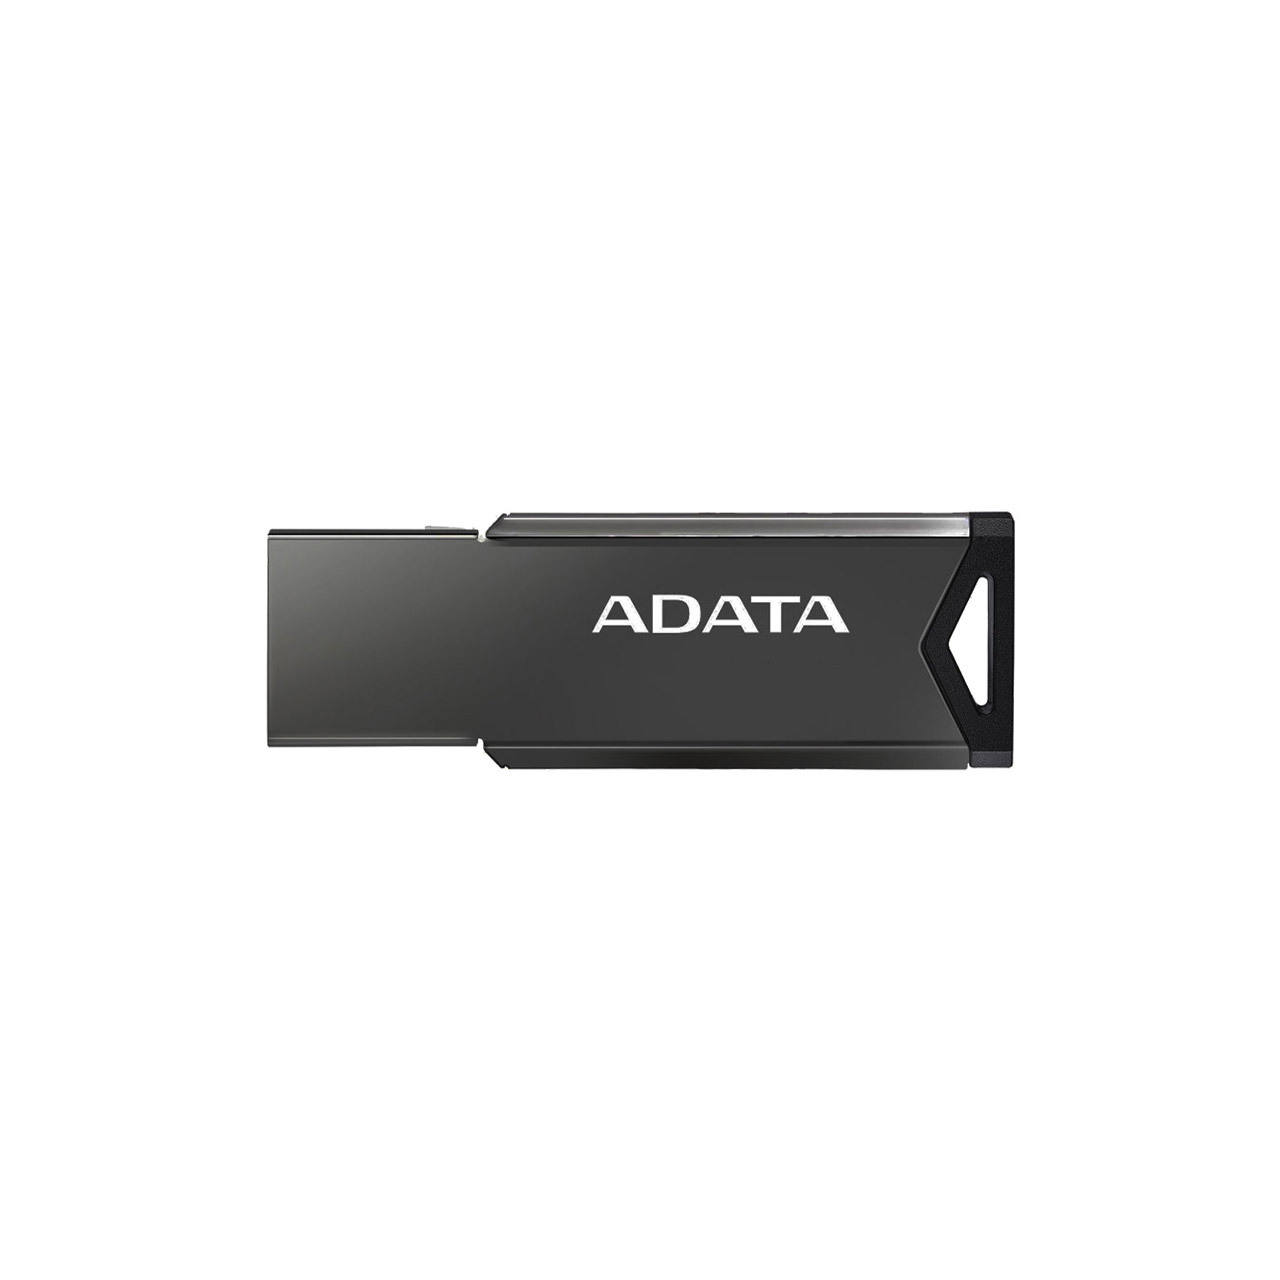 فلش ADATA UV250 CLASSIC USB 2.0 Flash Memory - 64GB مشکی